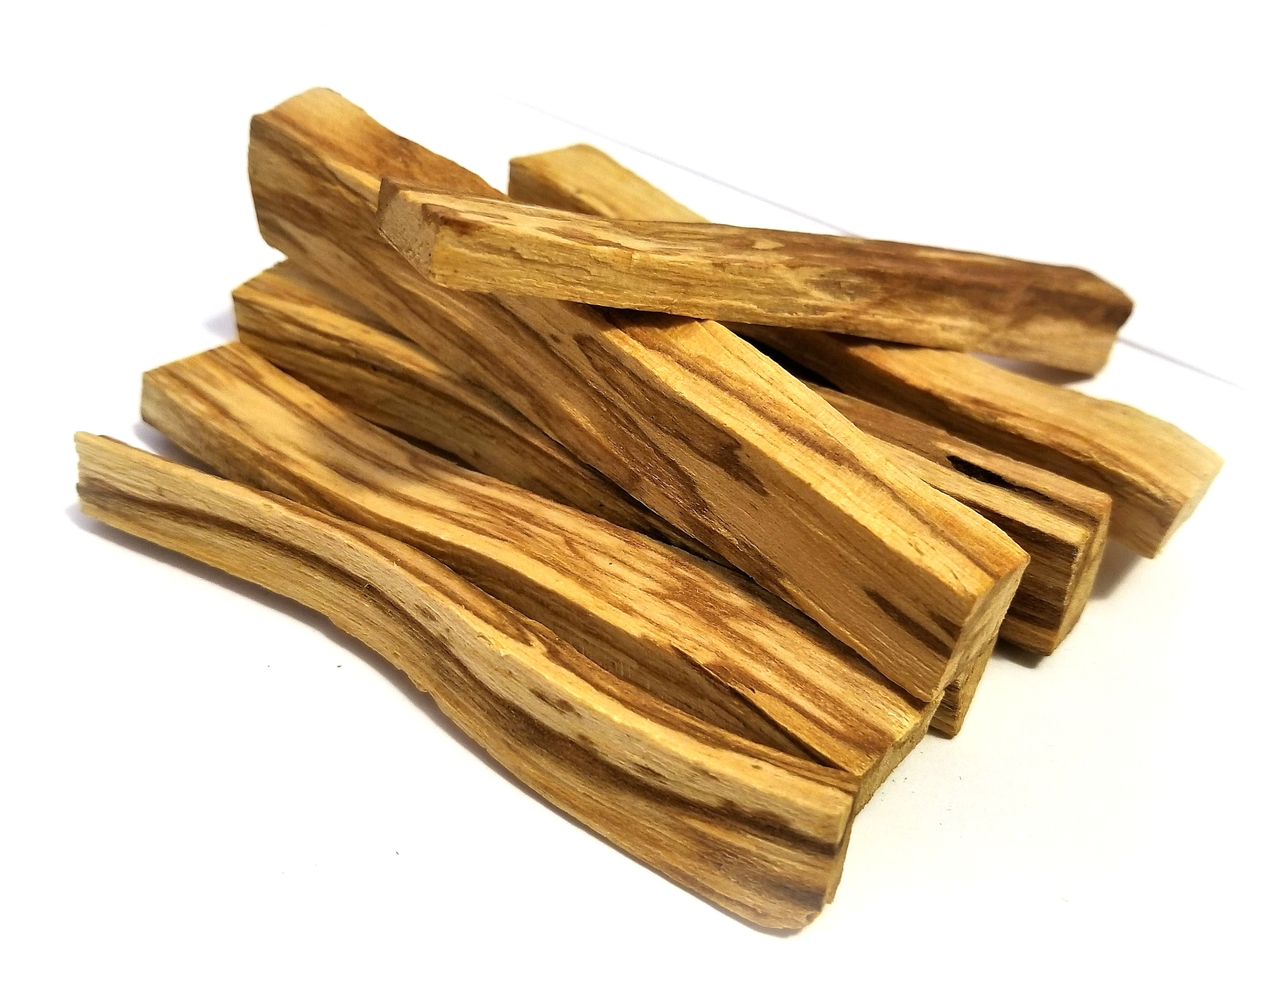 Amerika'ya ilk gidenlerin kullanımına şahit olduğu palo santo ağacı parçacıkları, bugün hala beğeni ile kullanılan ve rağbet gören doğal tütsüler arasında.